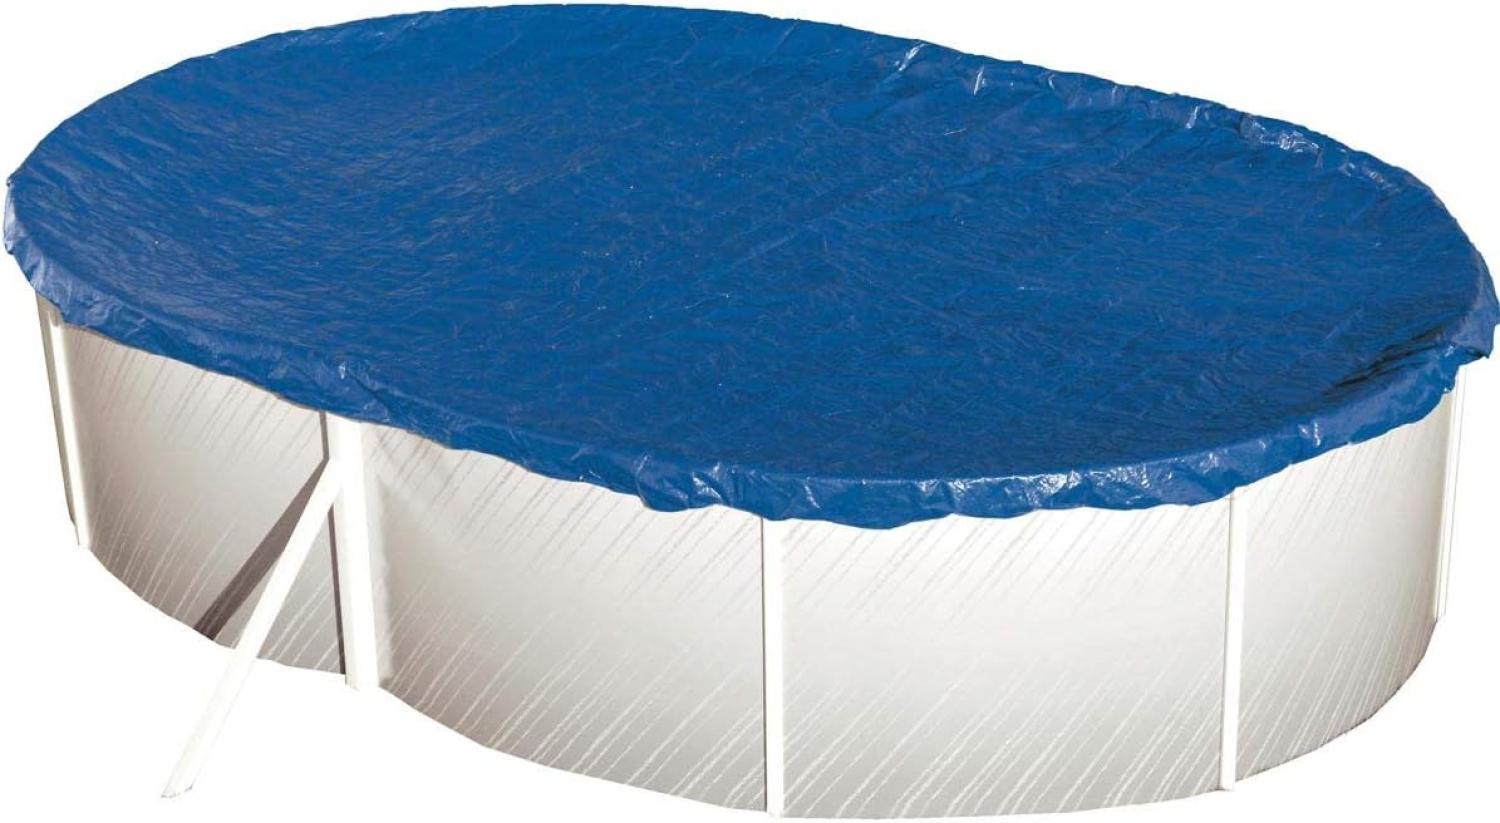 Steinbach Abdeckplane "Extra" für ovale Swimming Pool Stahlwandbecken, blau, 550 x 360 cm Bild 1